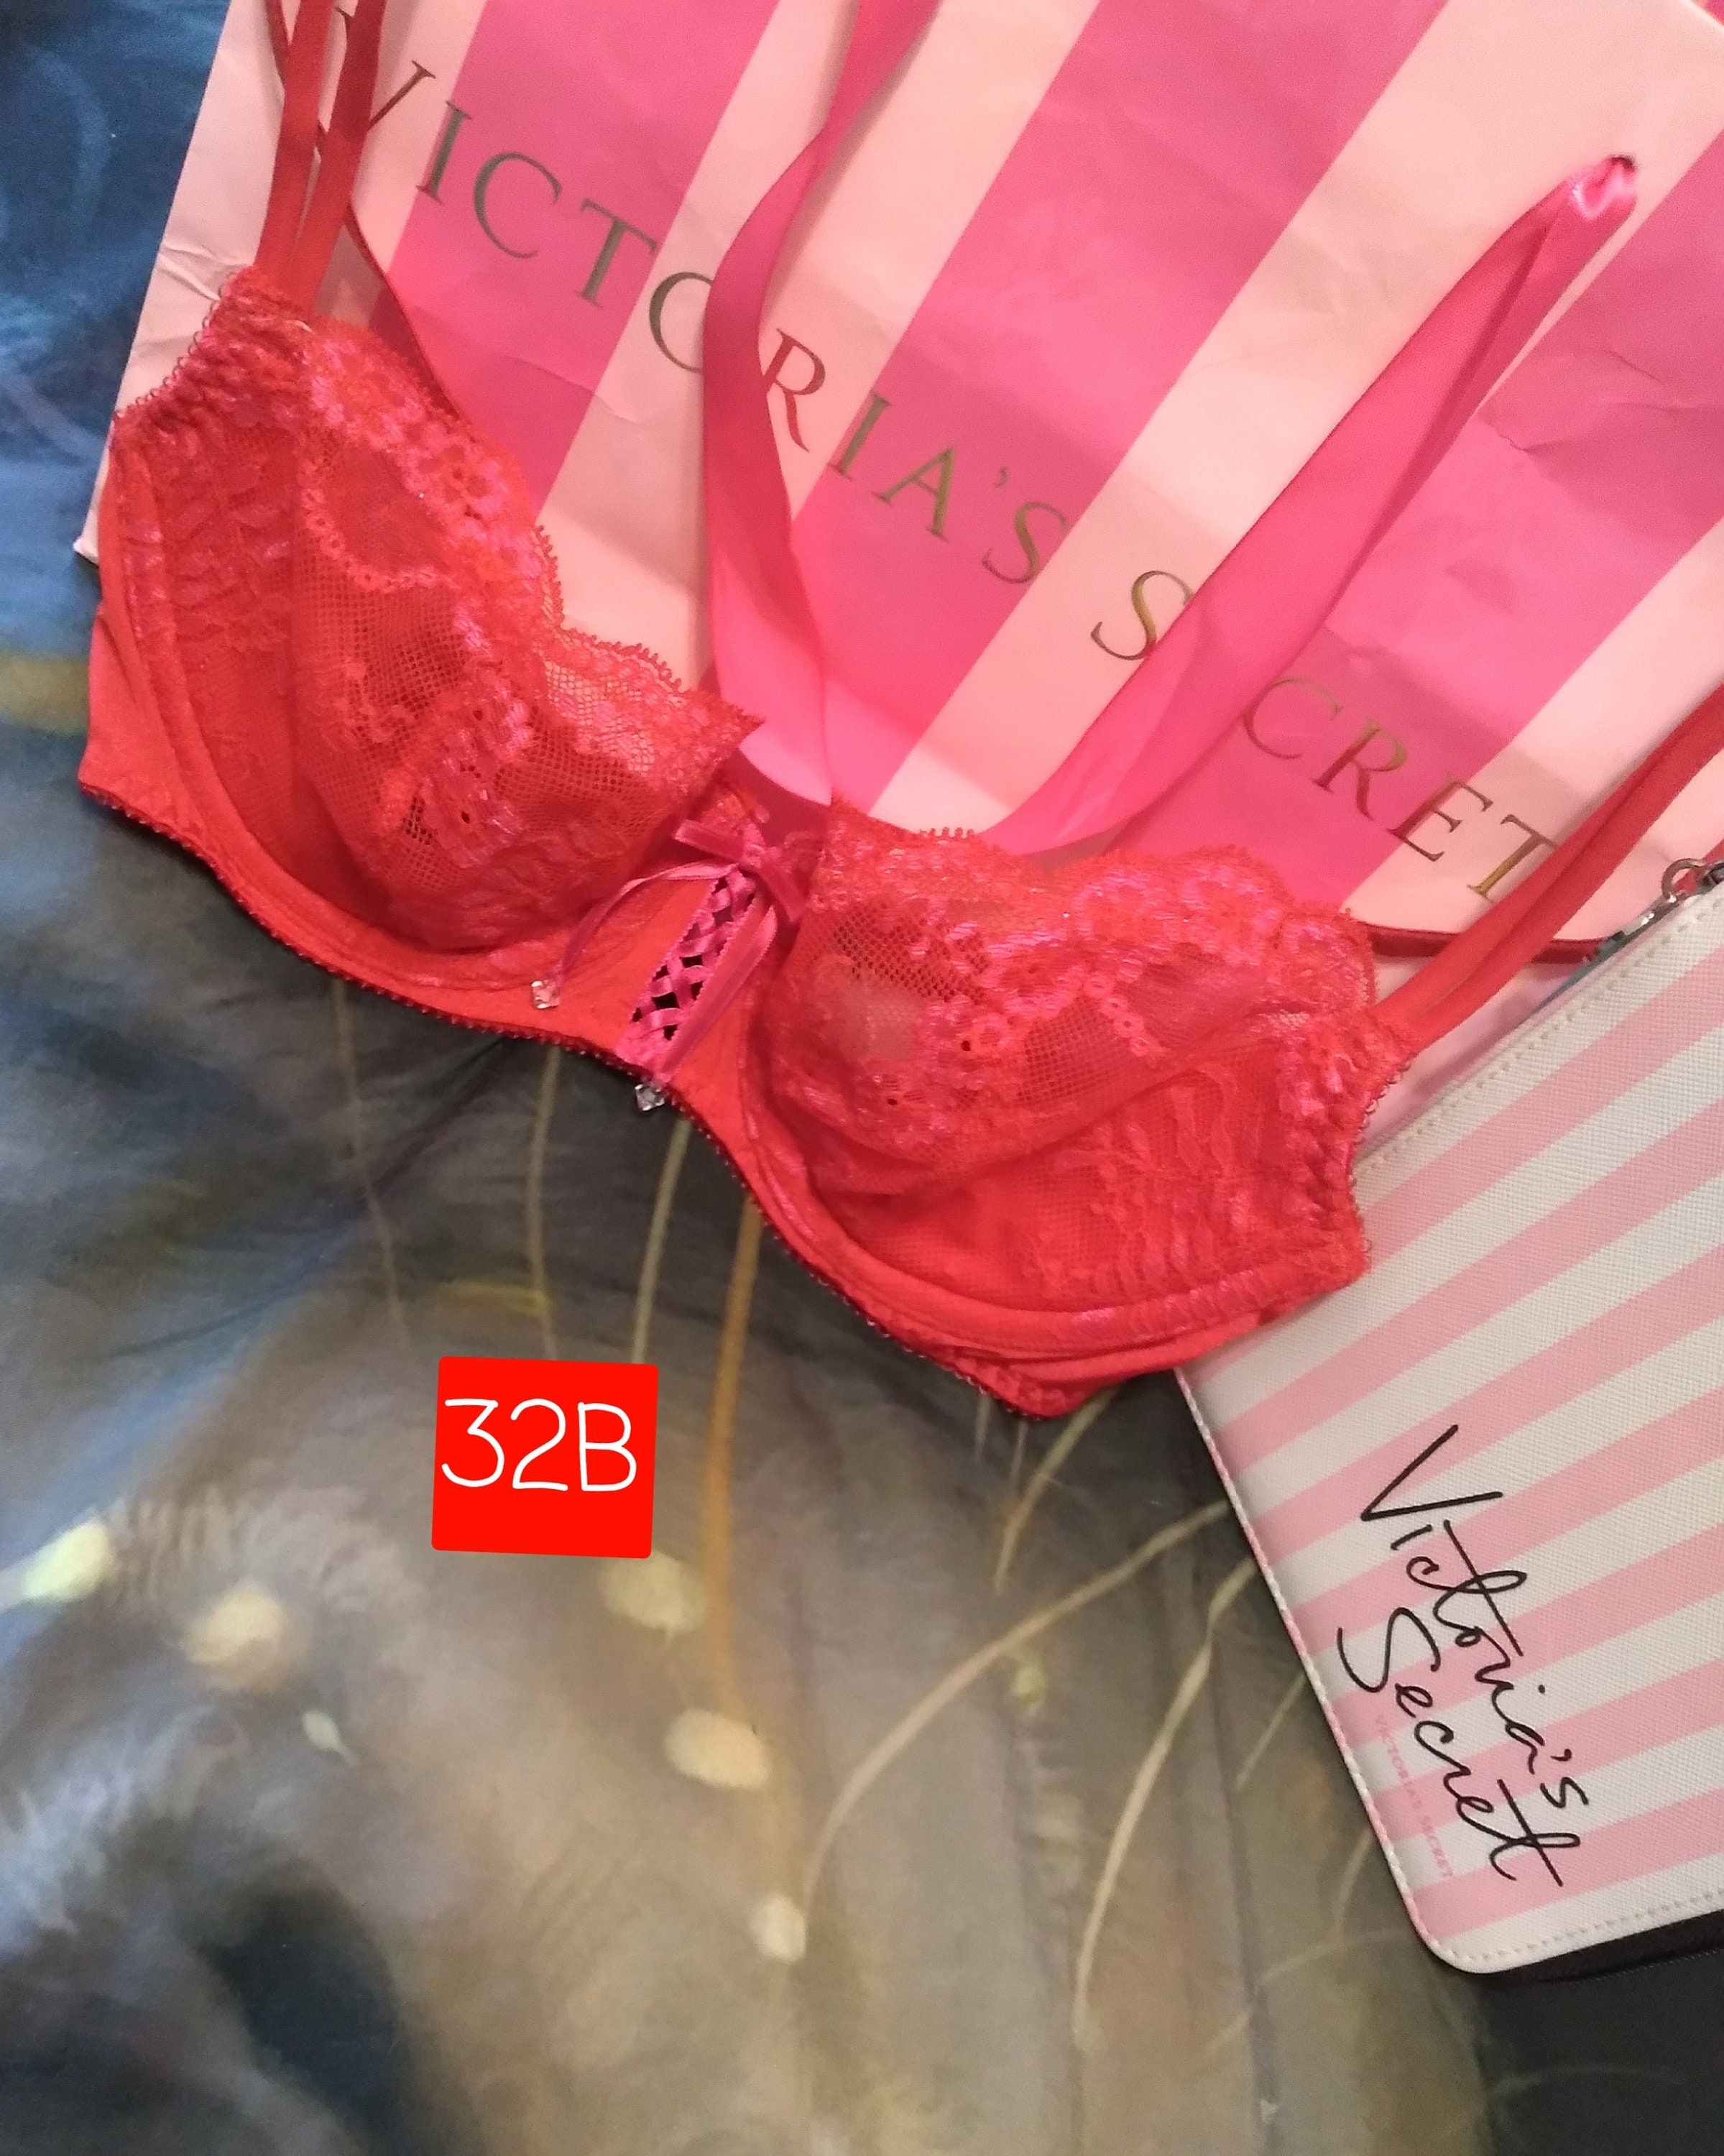 32B Victoria's Secret Unlined Demi Red Lace Bra Vintage 2000s VS 